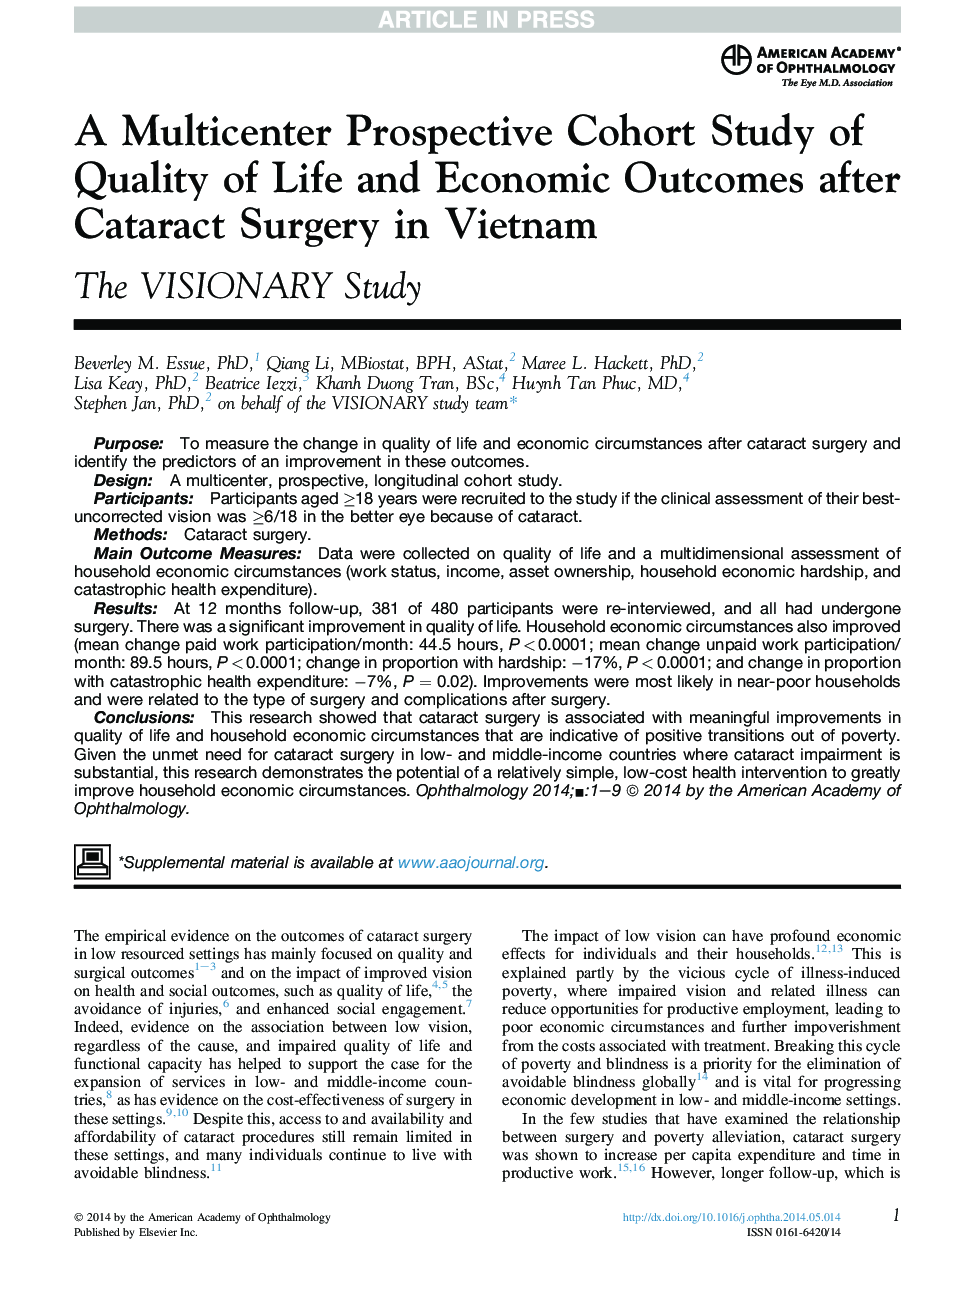 یک مطالعه کوهورت چشم انداز چندگانه کیفیت زندگی و نتایج اقتصادی پس از جراحی کاتاراکت در ویتنام 